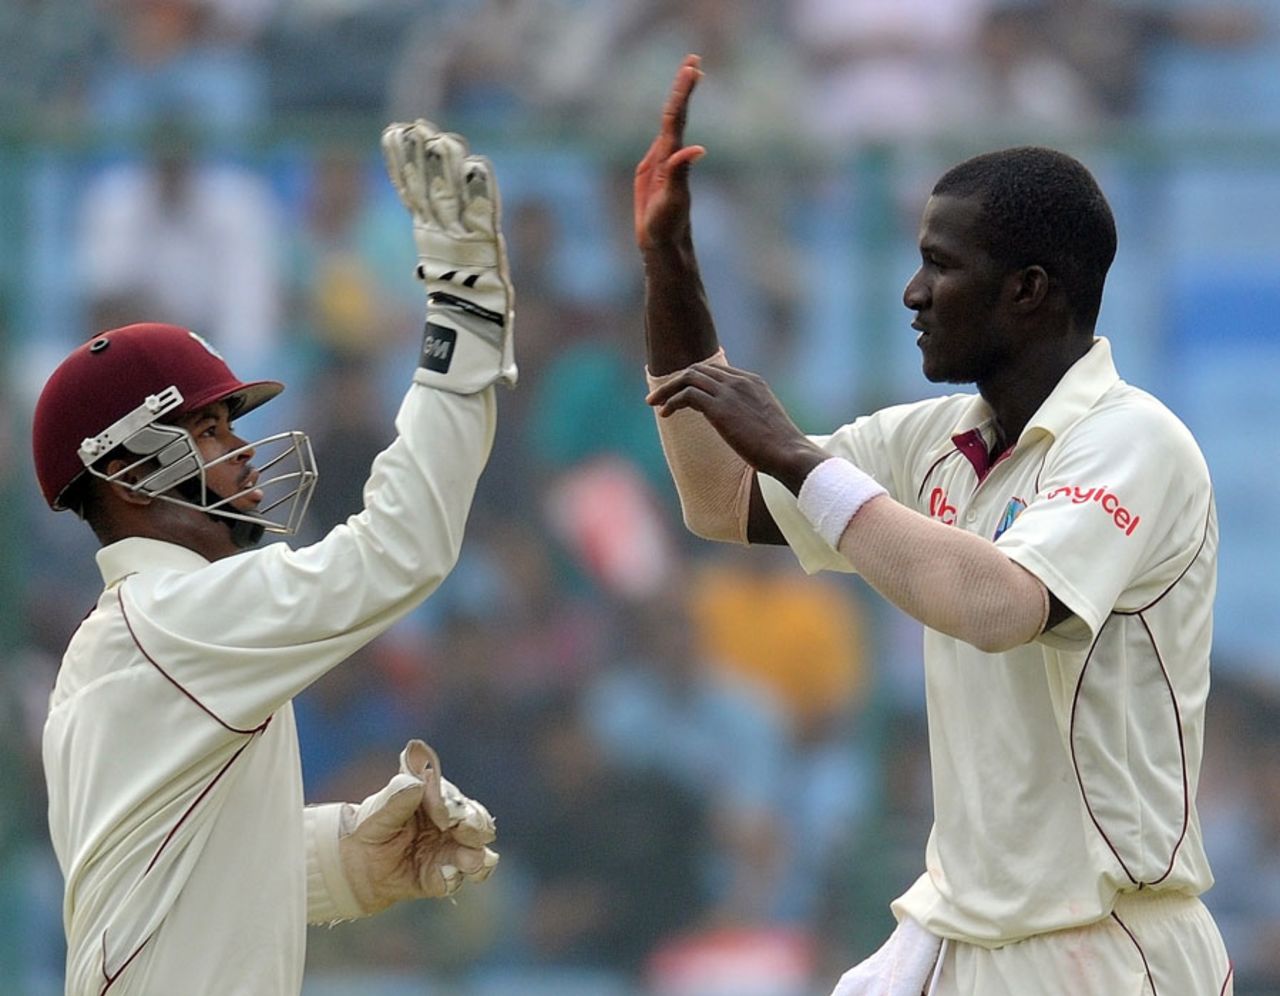 Darren Sammy and Carlton Baugh high-five after Virender Sehwag's dismissal, India v West Indies, 1st Test, New Delhi, 3rd day, November 8, 2011